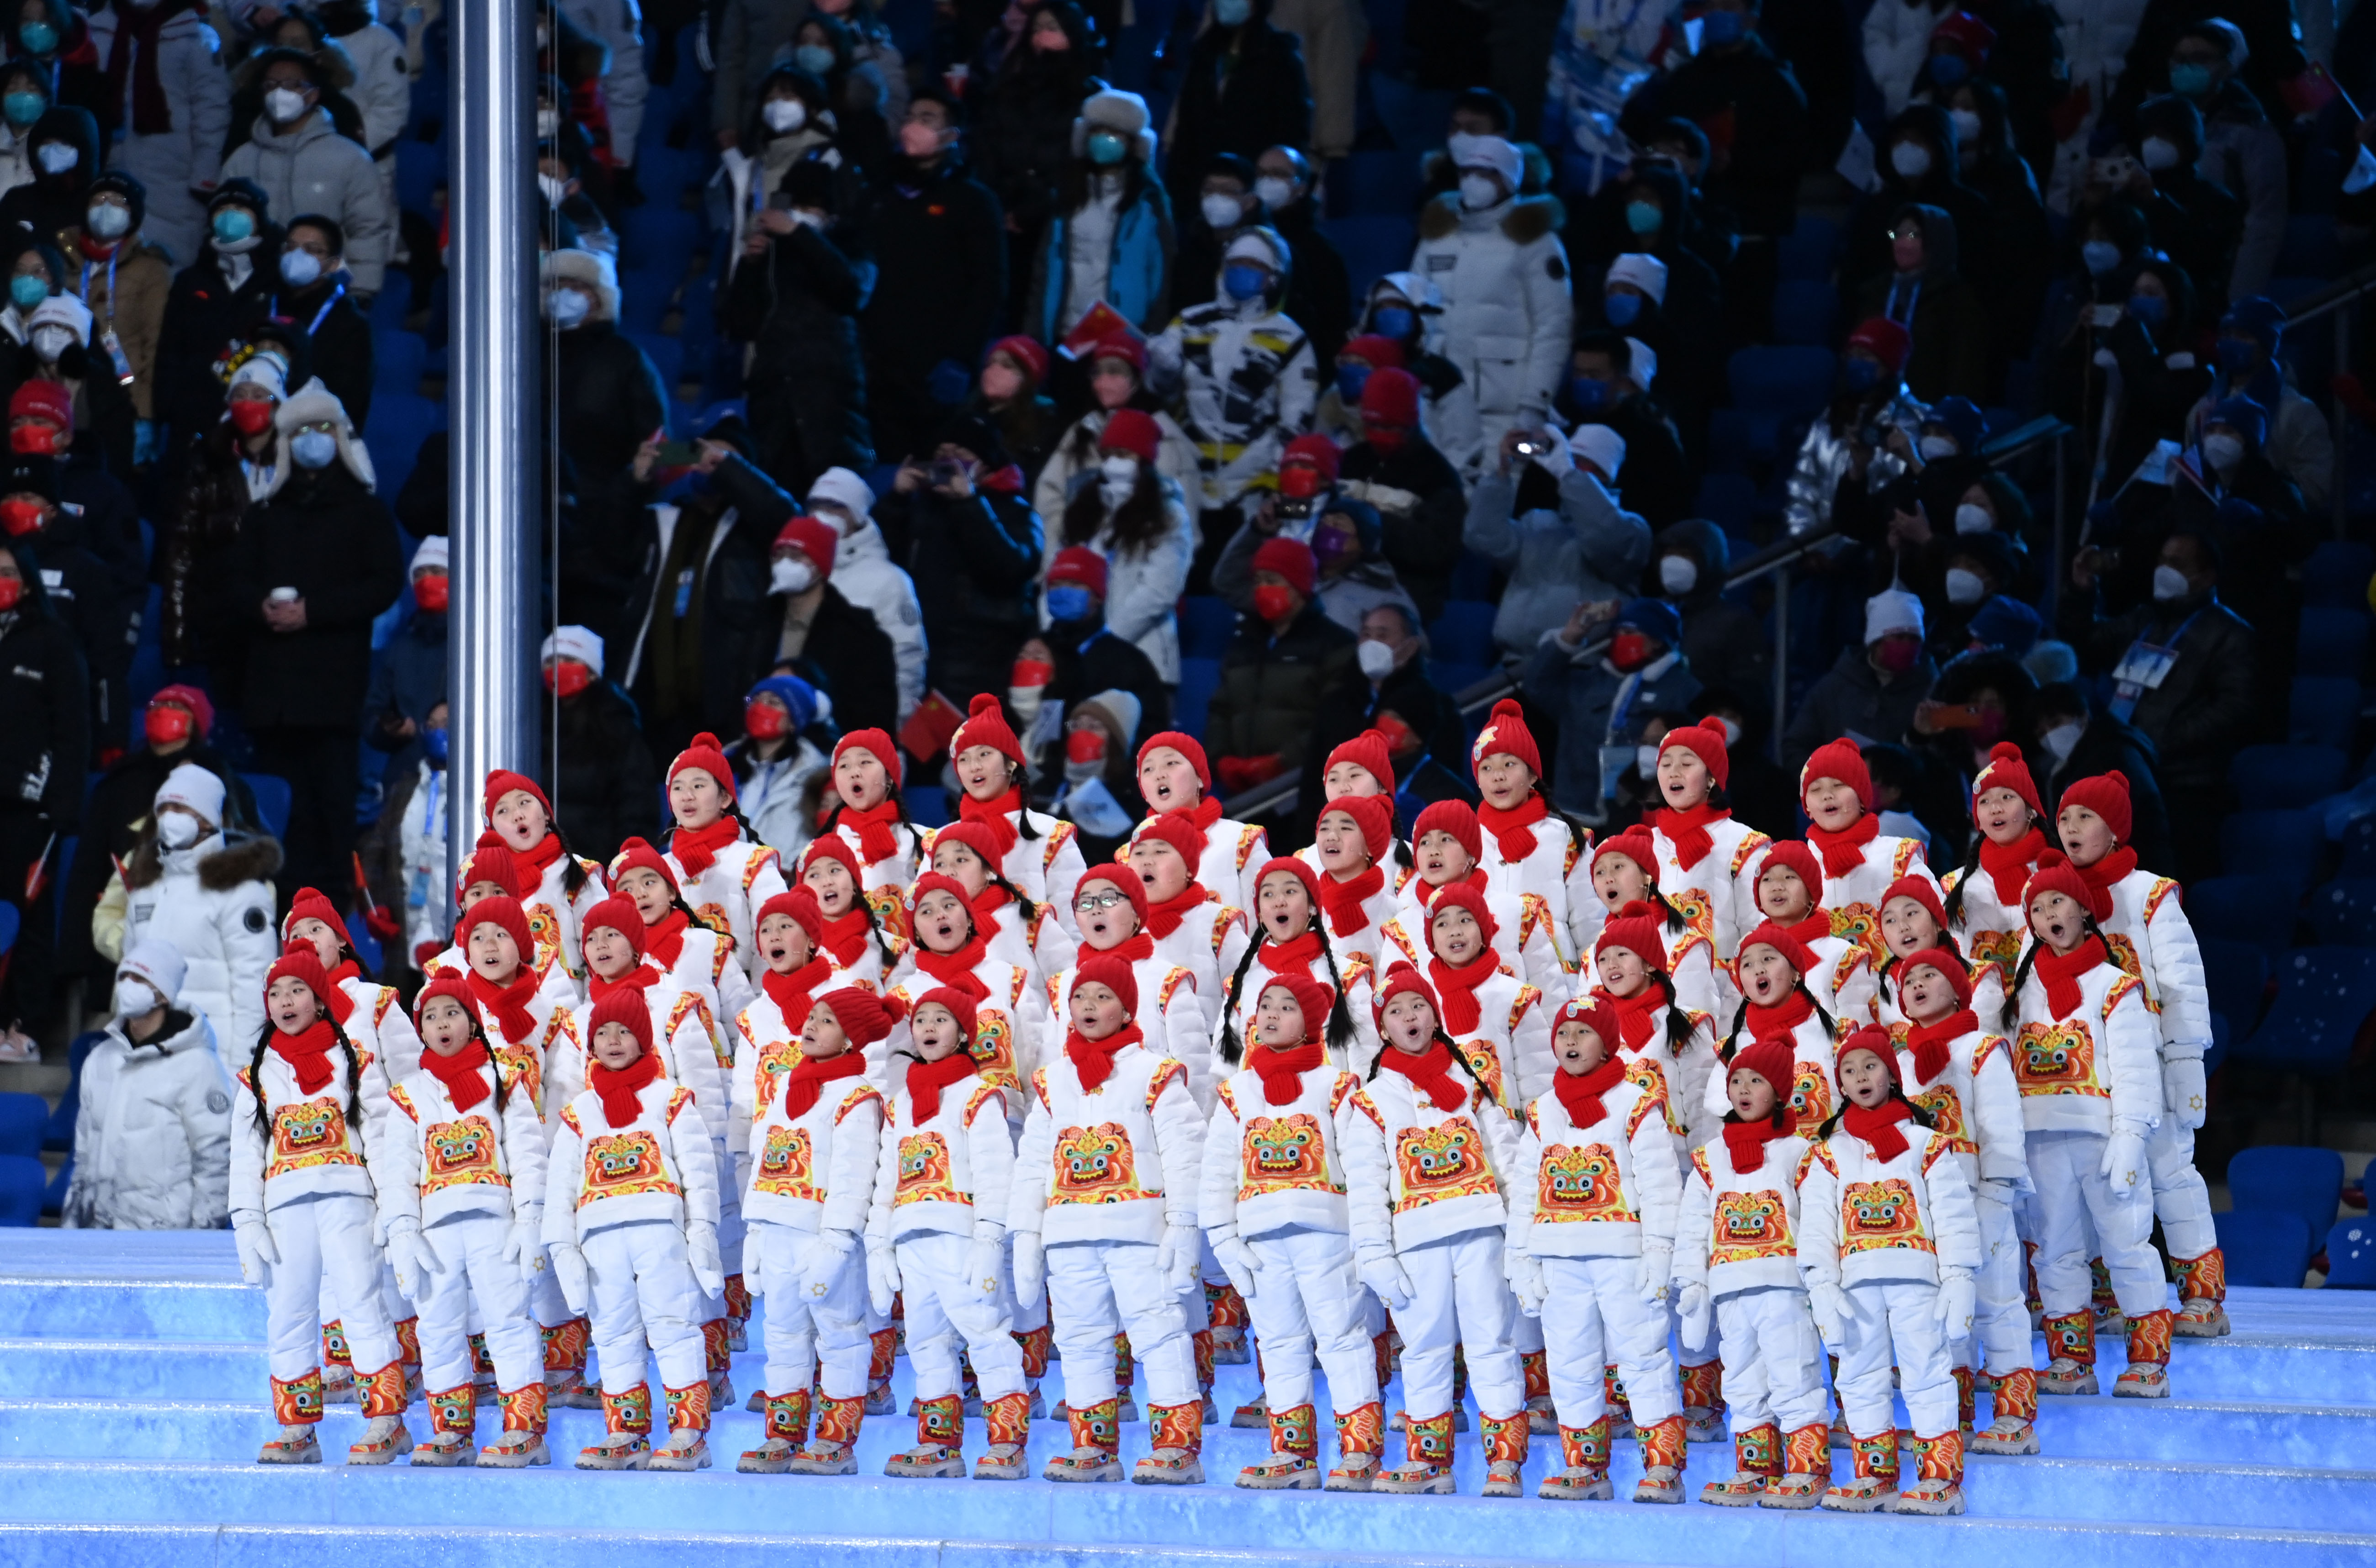 冬奥会开幕式上的圣洁童声引来希腊音乐人的赞叹